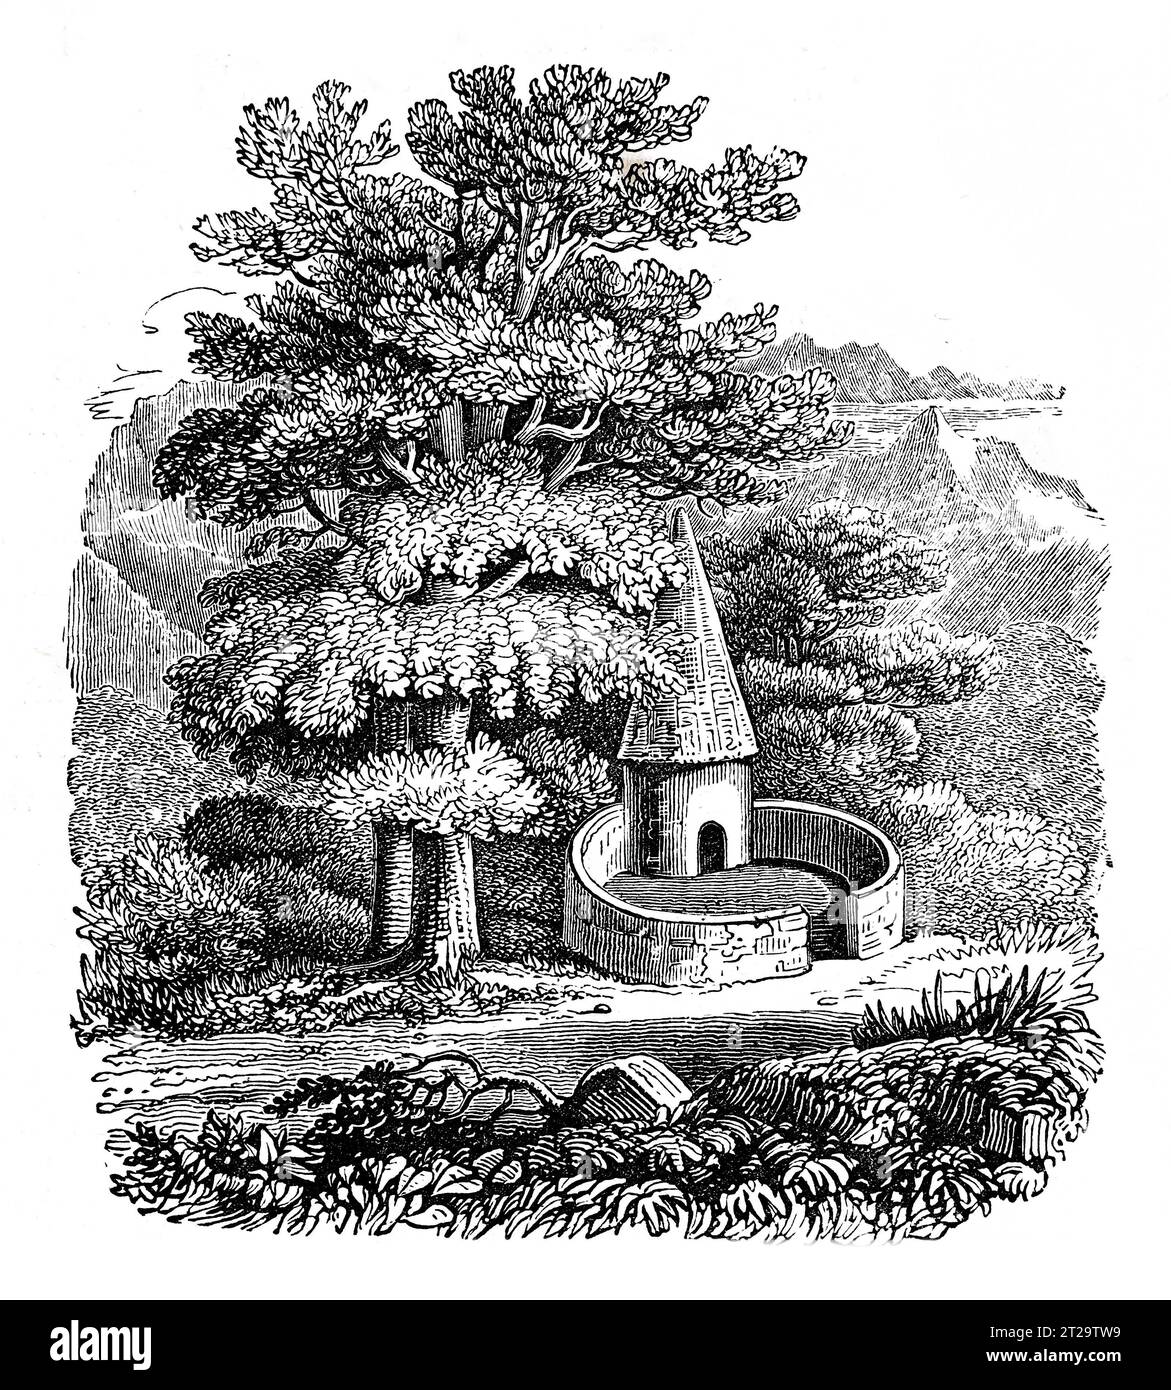 Una lechuga galesa. Ilustración en blanco y negro de la 'Vieja Inglaterra' publicada por James Sangster en 1860. Foto de stock